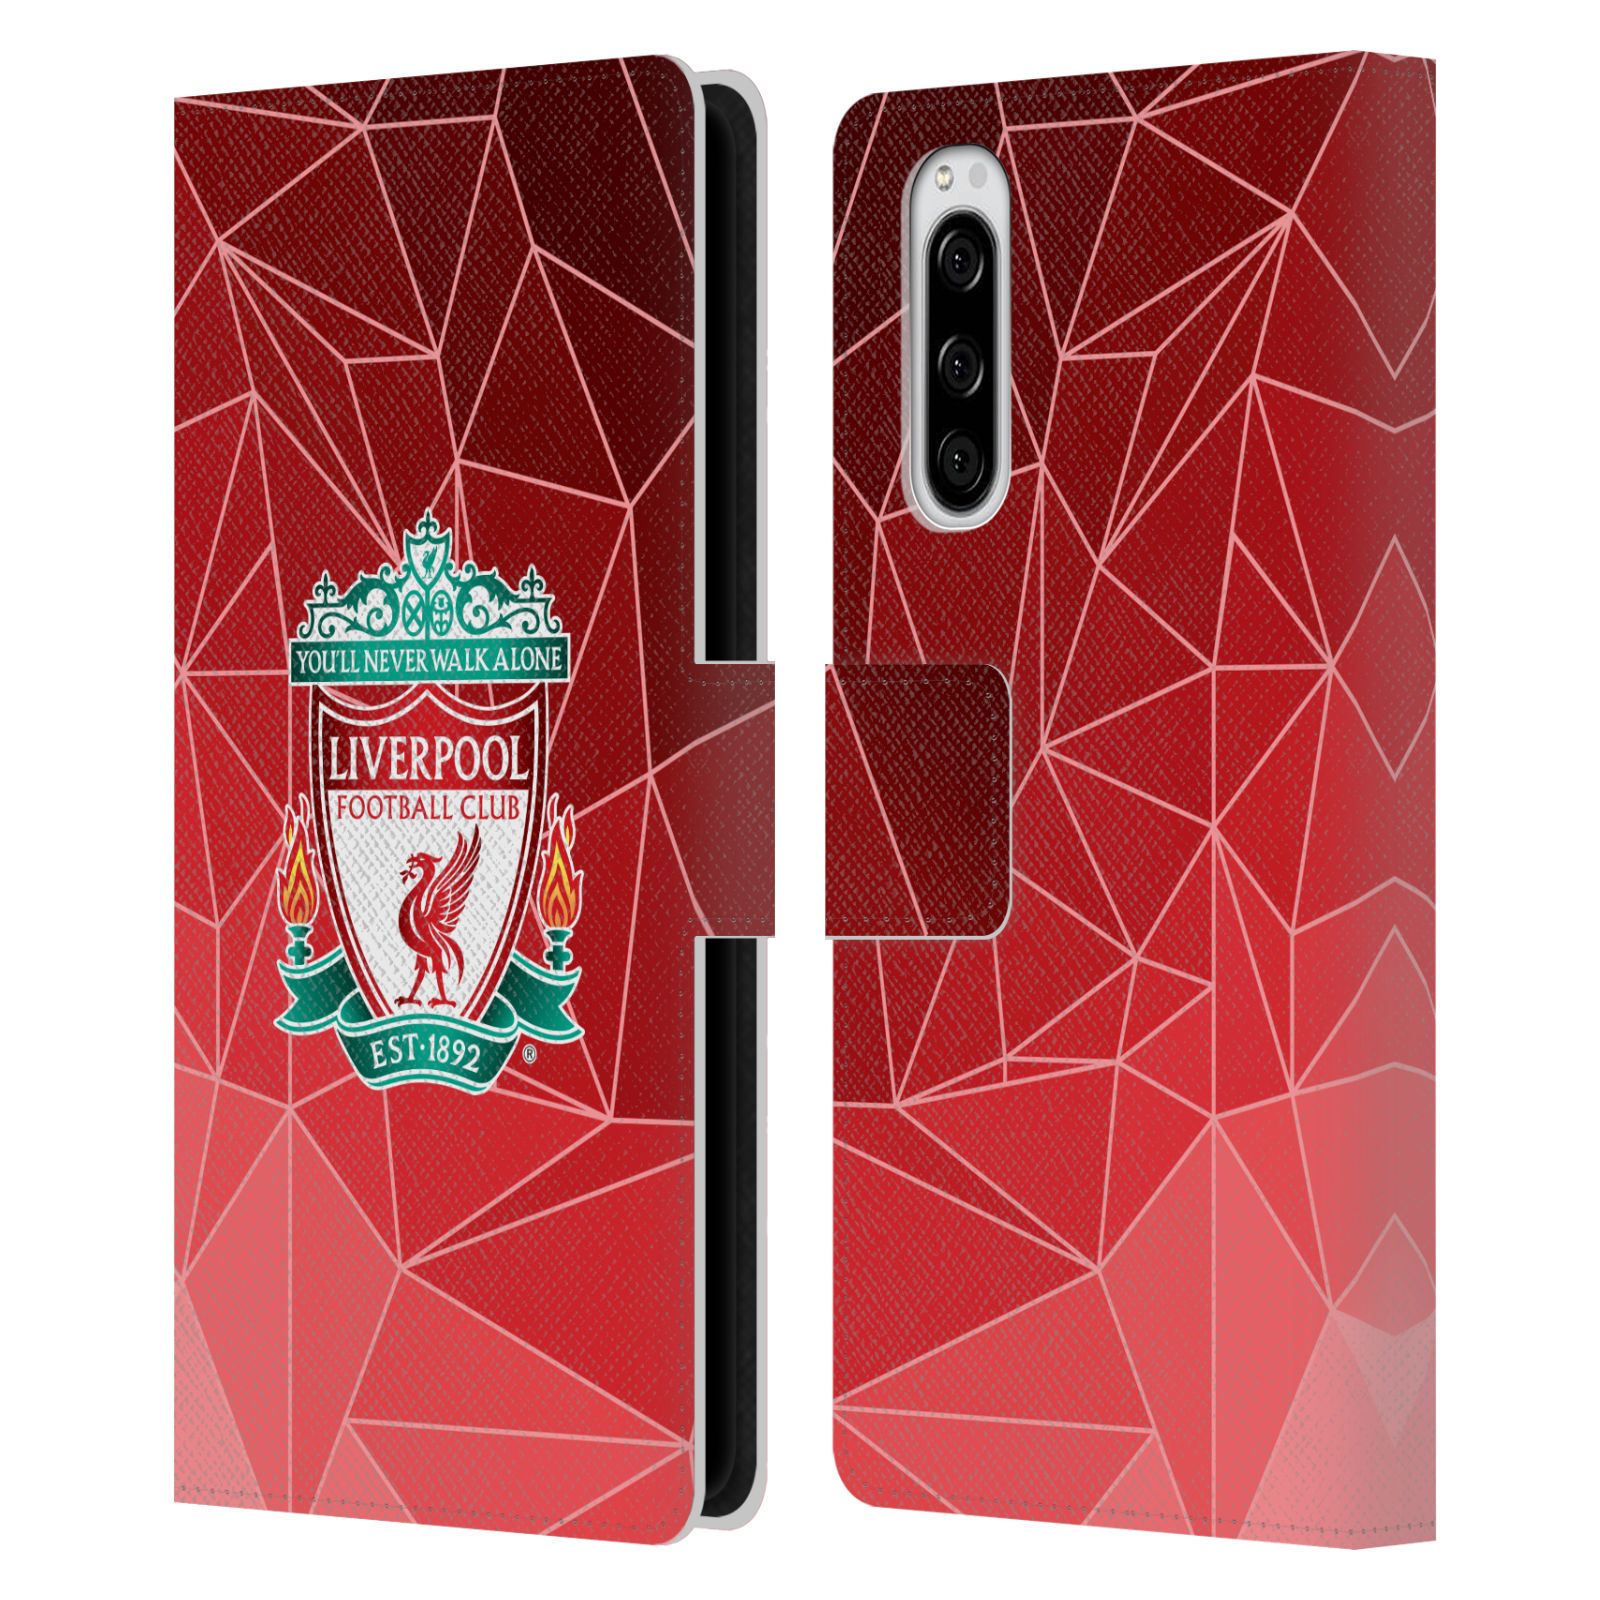 Pouzdro na mobil Sony Xperia 5 - Head Case - fotbalový klub liverpool geometrické tvary